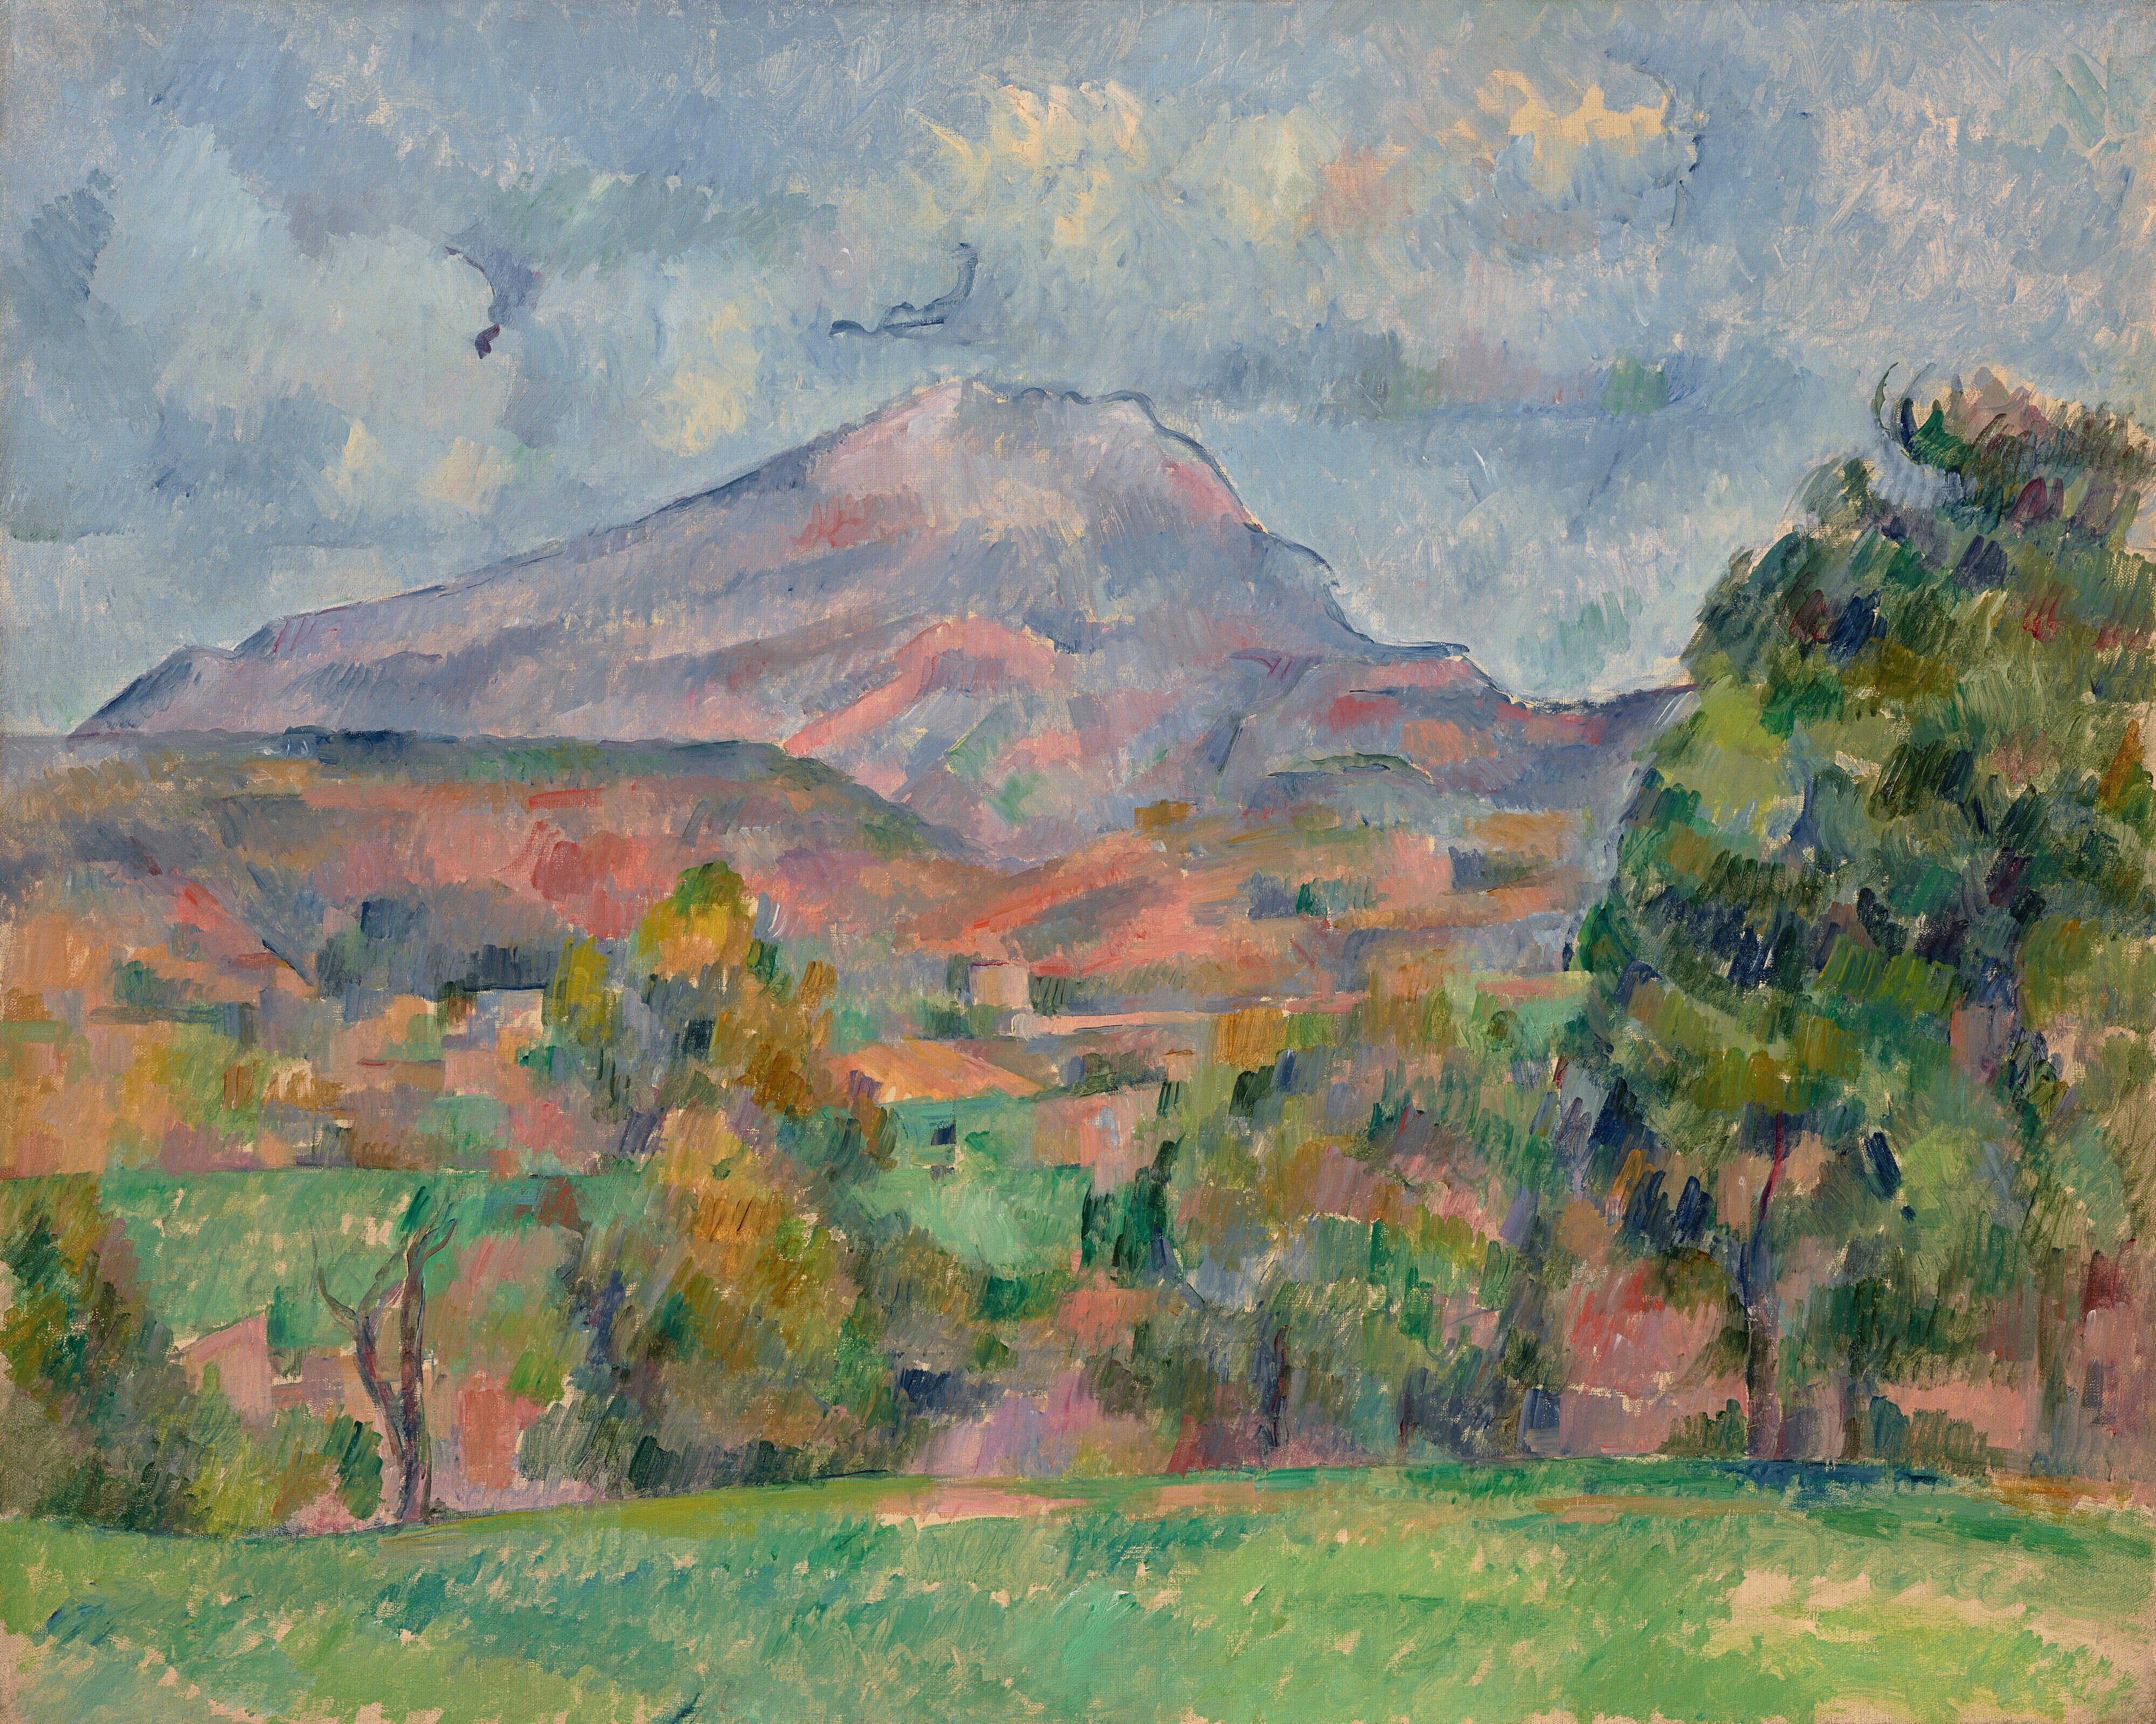 Paul Cézanne's La Montagne Sainte-Victoire (Image: Paul Cézanne/Christie’s)